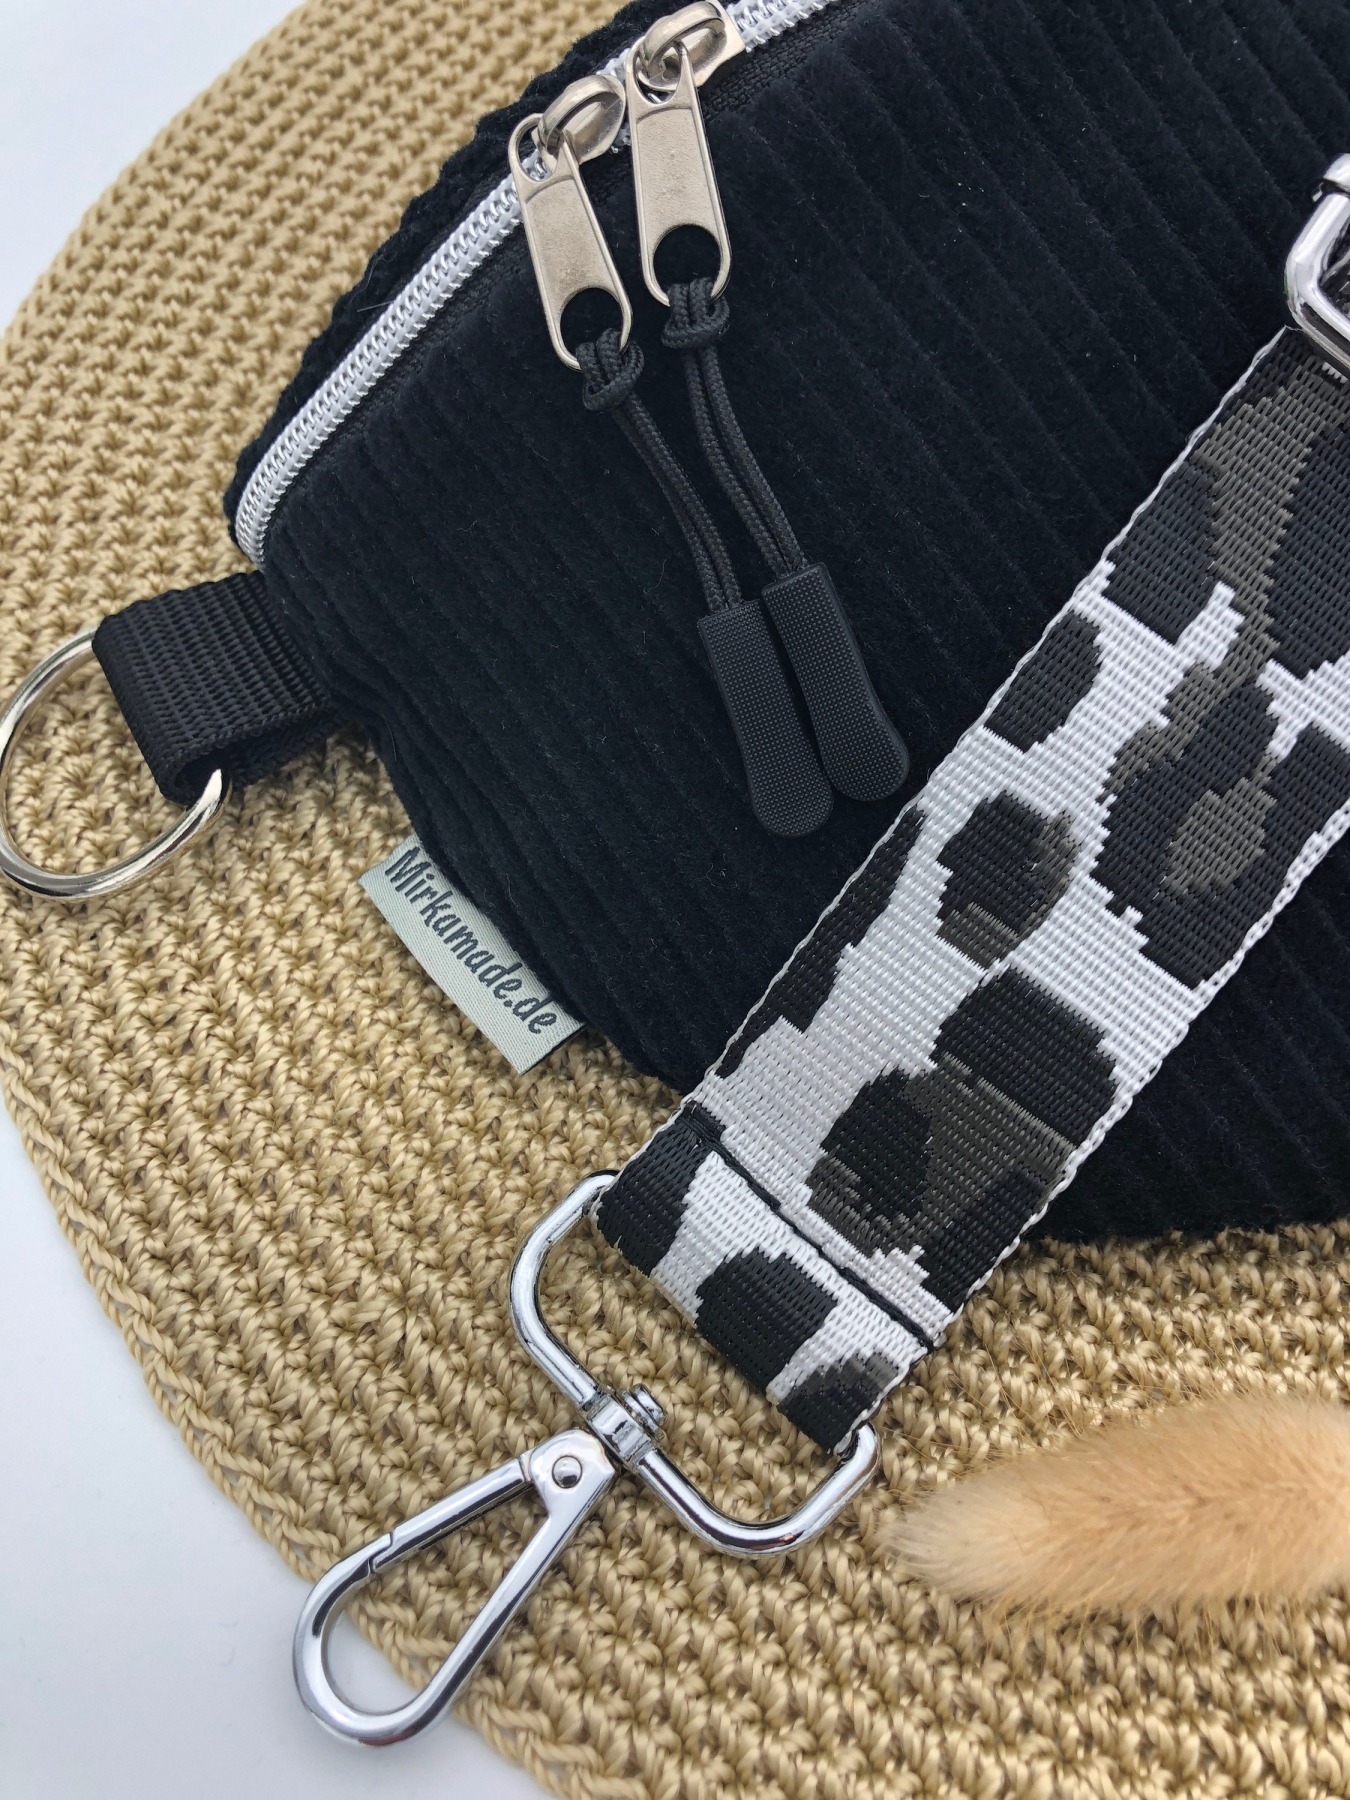 Bauchtasche Crossbag Cord schwarz mit Taschengurt Leo schwarz/weiß Hipbag leicht und praktisch Kord